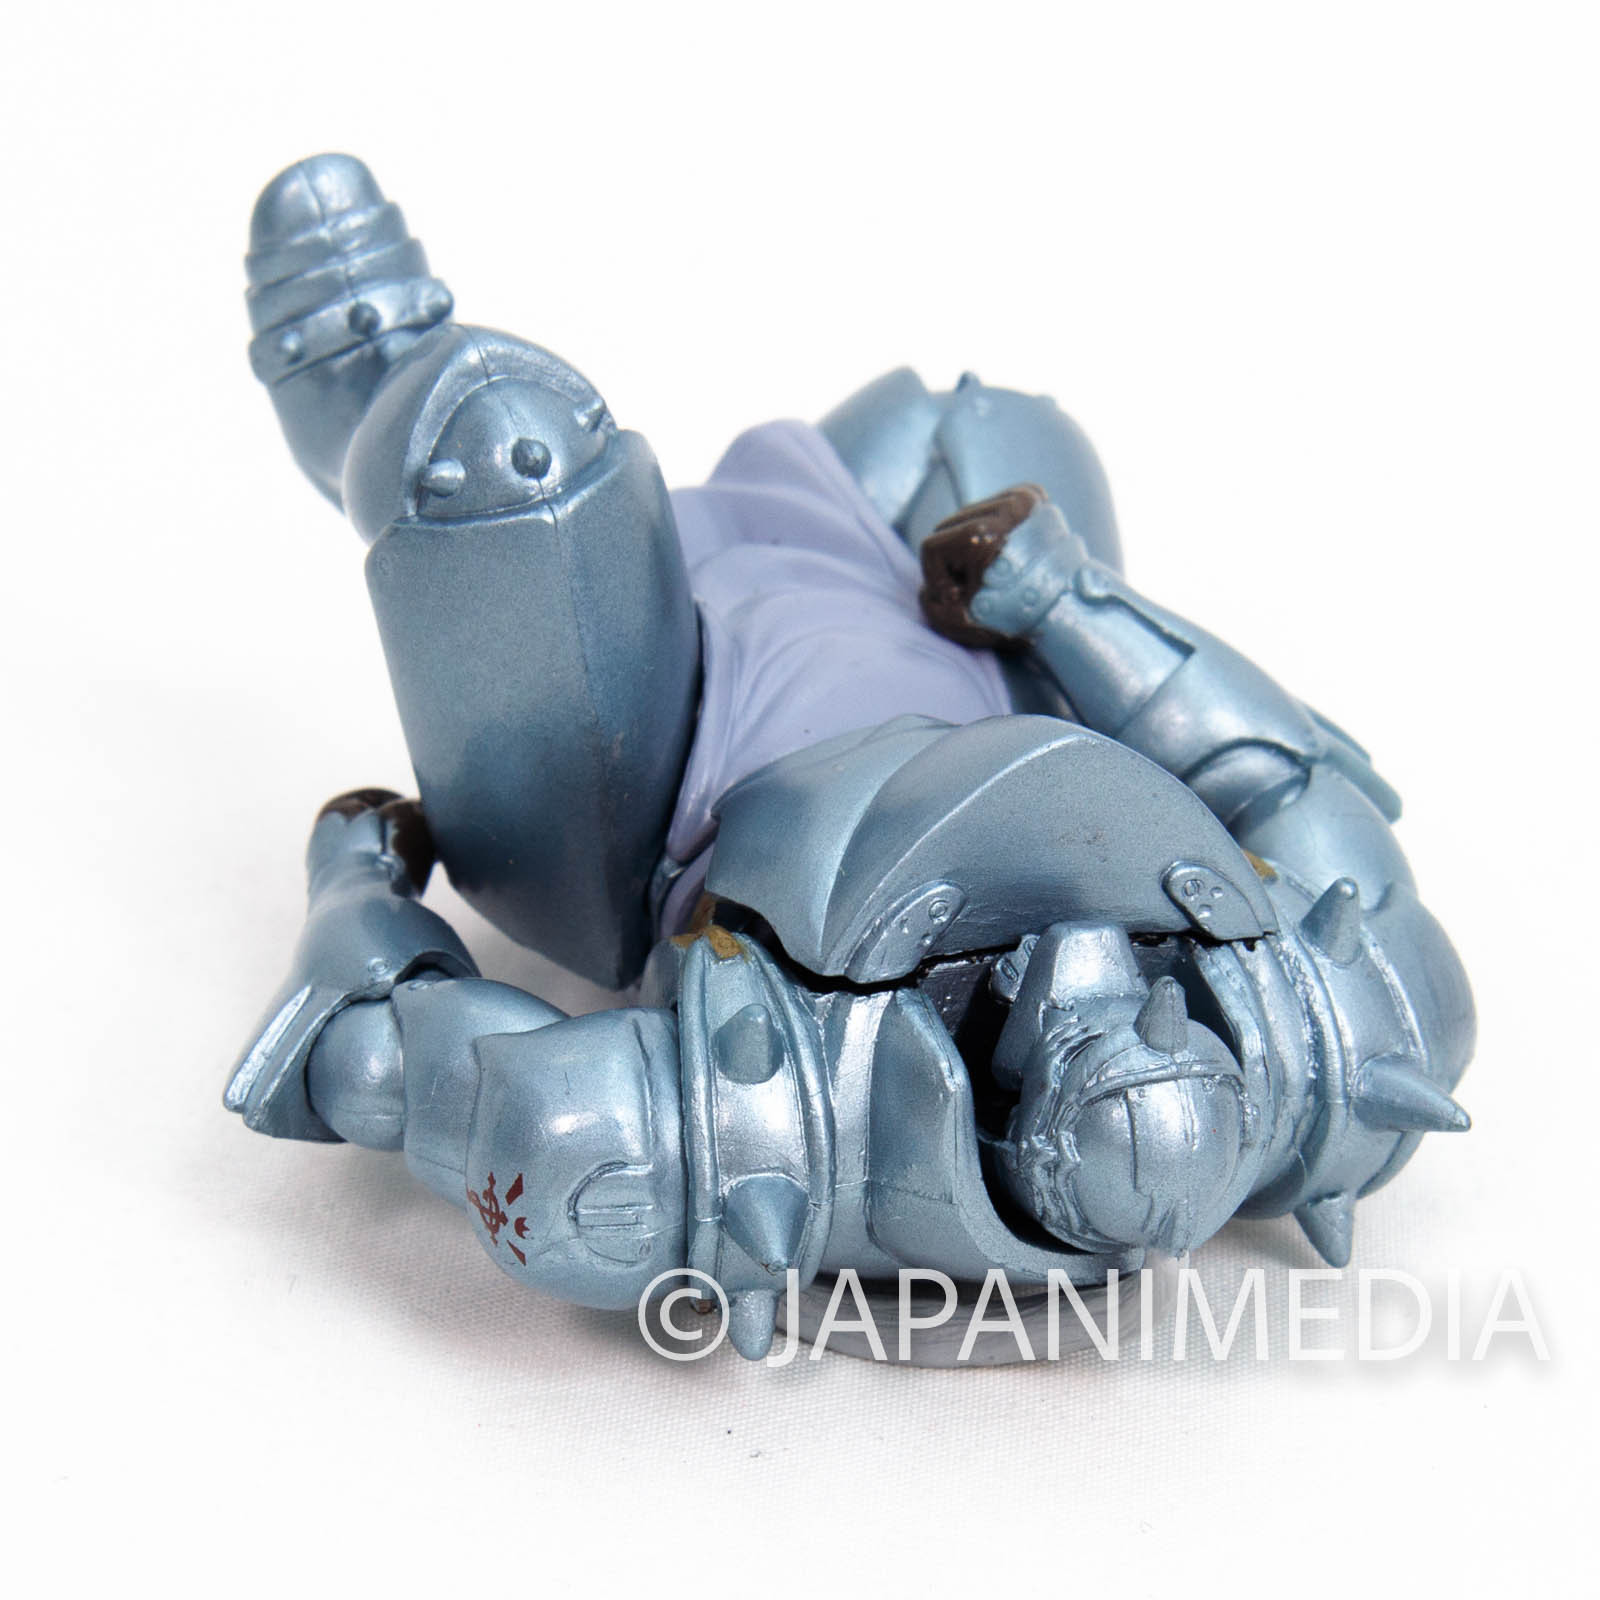 FullMetal Alchemist Alphonse Elric HG series Mini Figure JAPAN ANIME